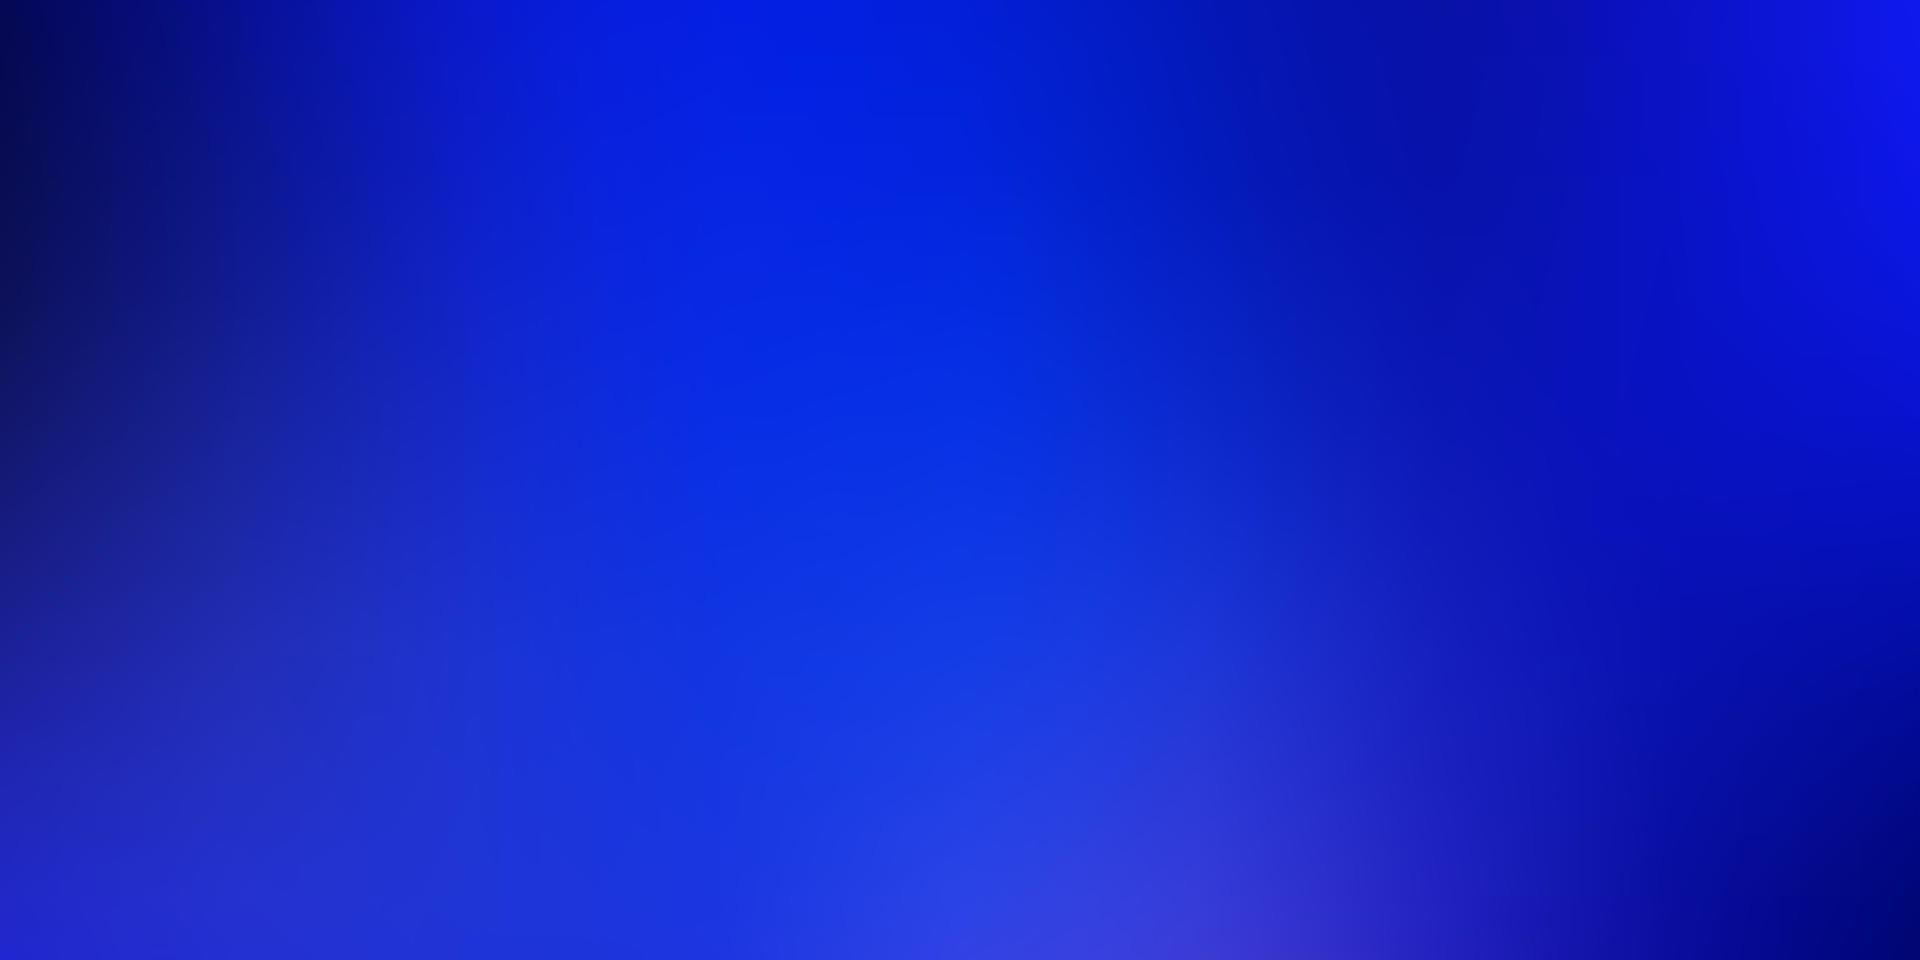 sfondo astratto di vettore azzurro.